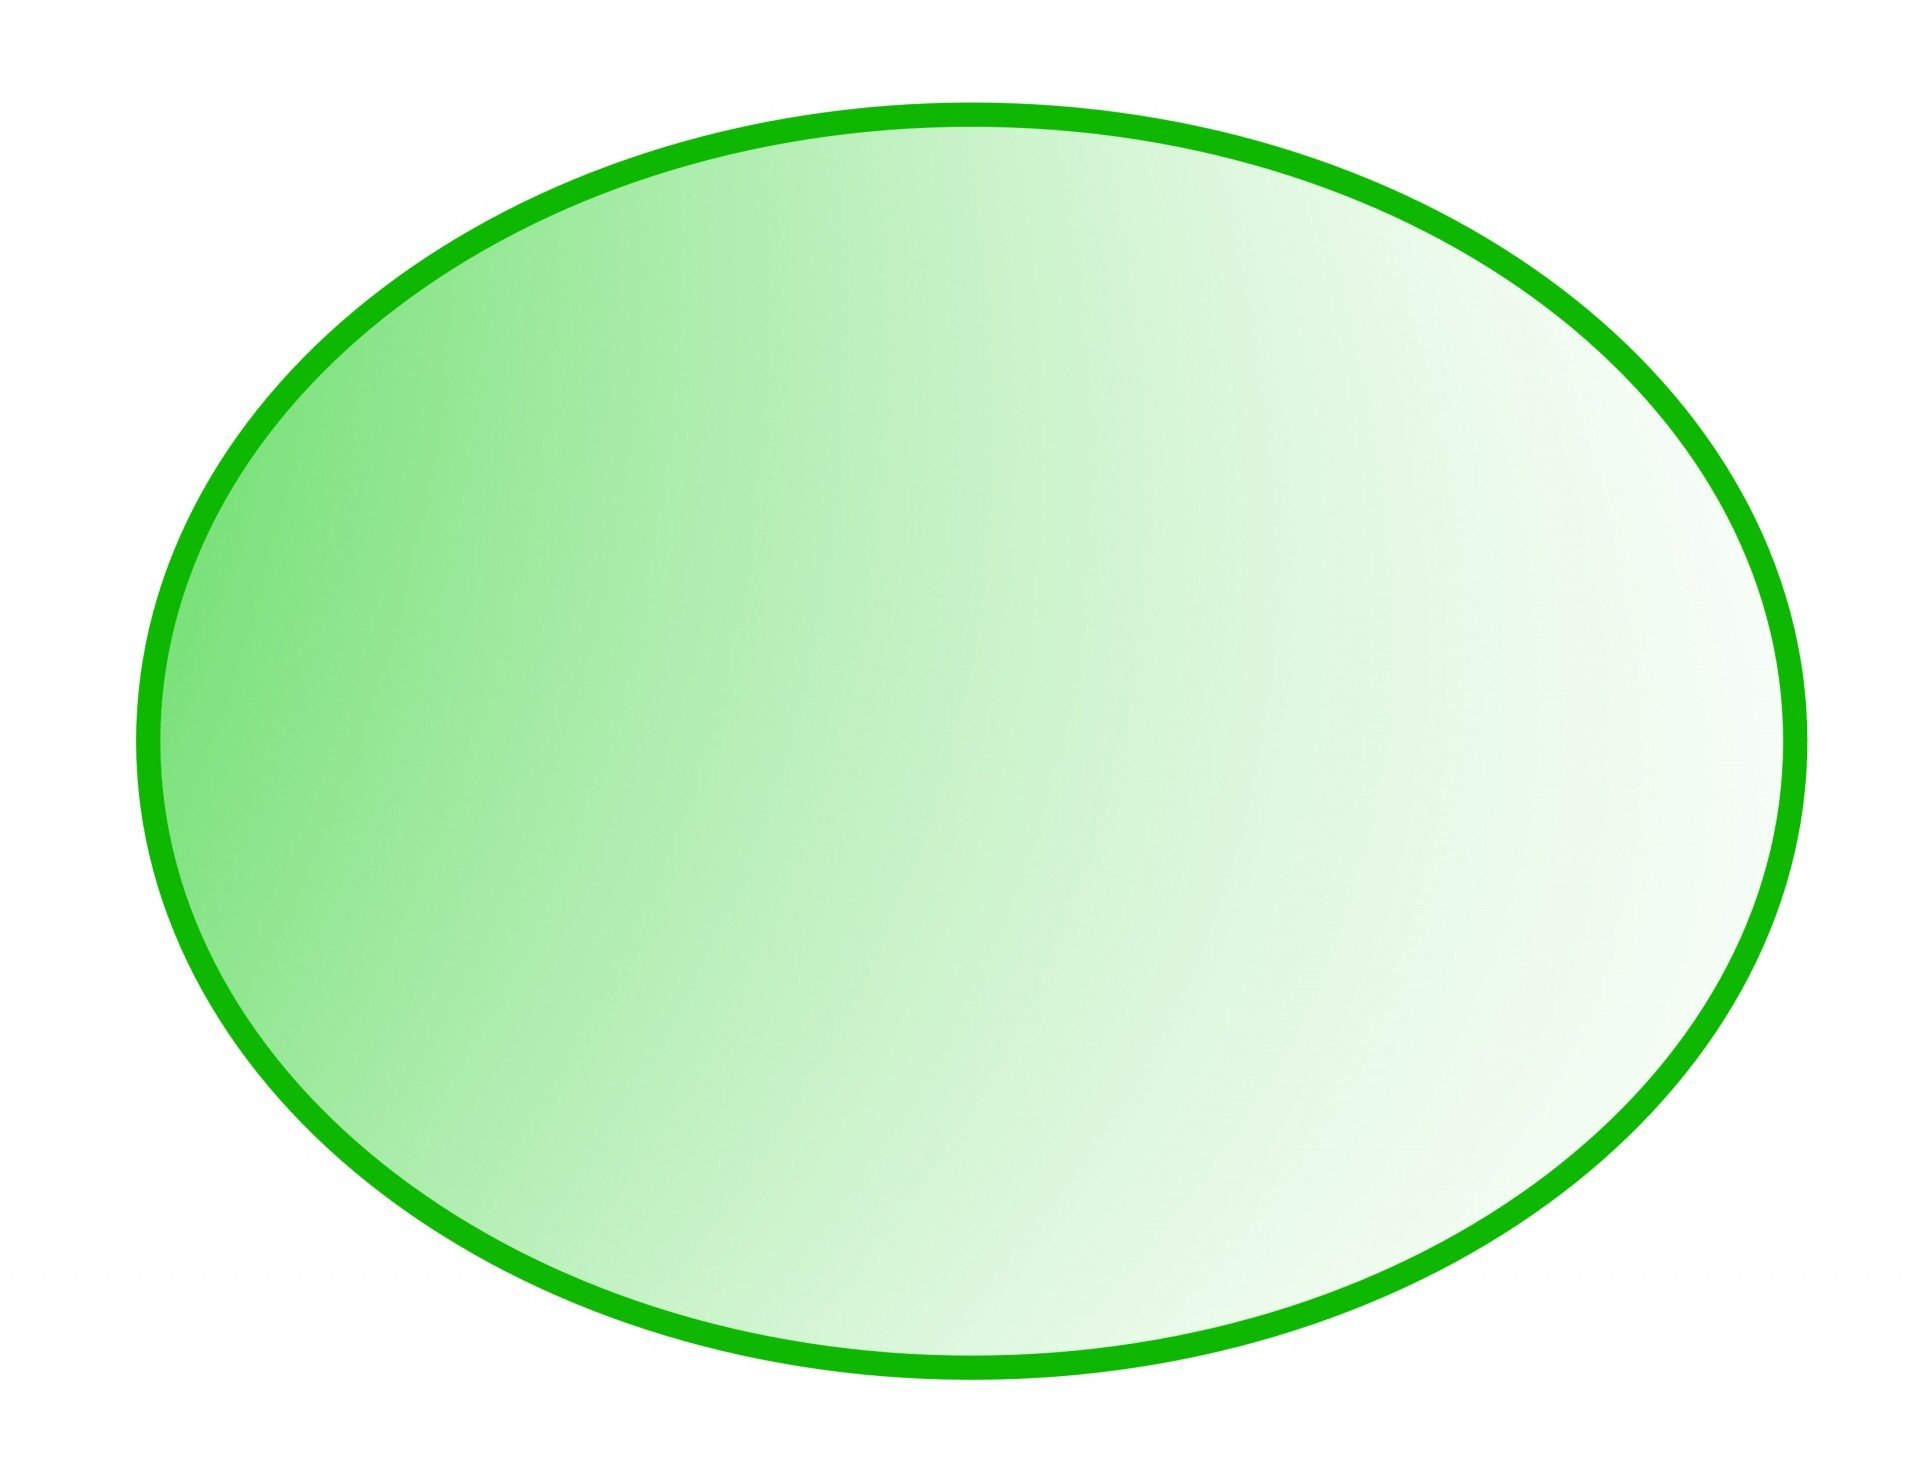 Круг на прозрачном фоне картинки для детей. Геометрические фигуры овал. Овал зеленый. Зеленый круг на прозрачном фоне. Овал на прозрачном фоне.